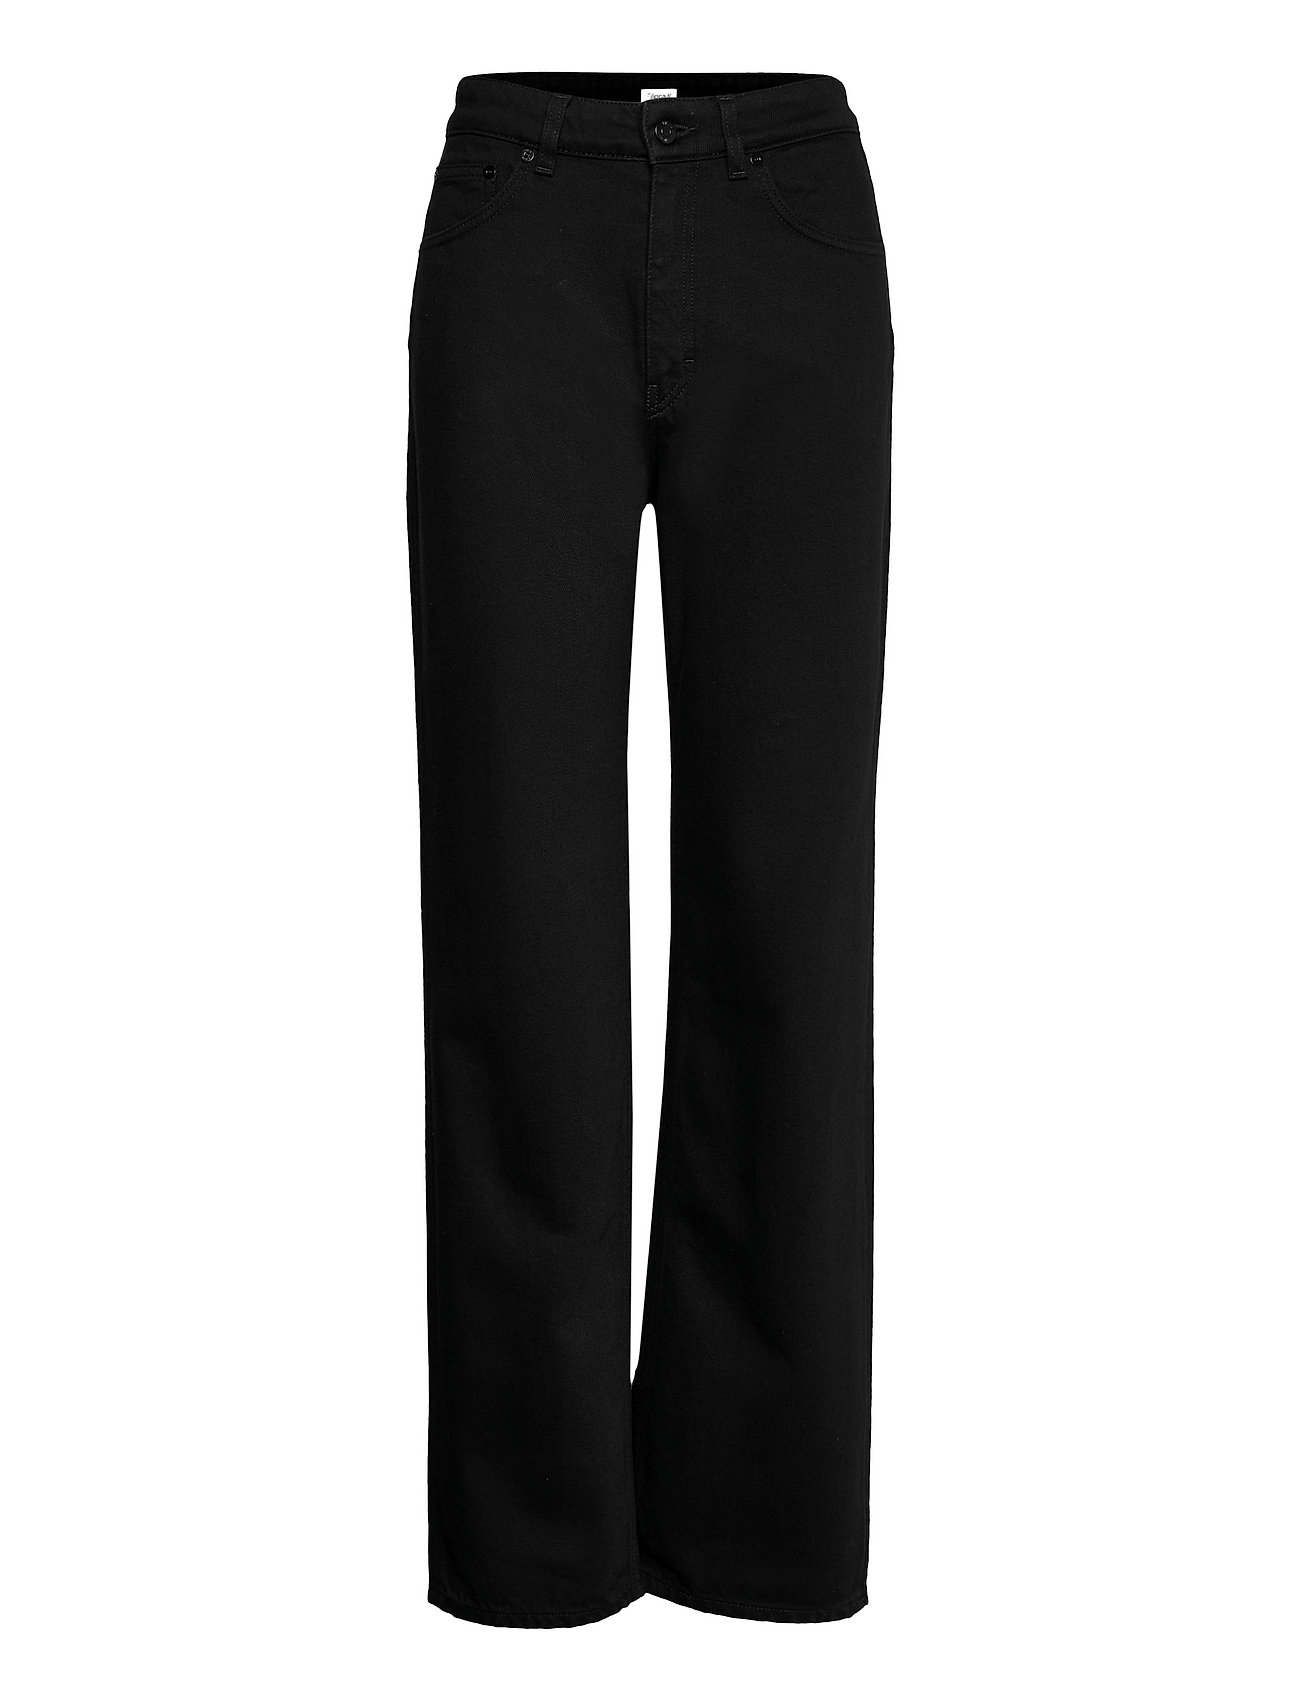 Filippa K Eliza Jean - Straight jeans - Boozt.com